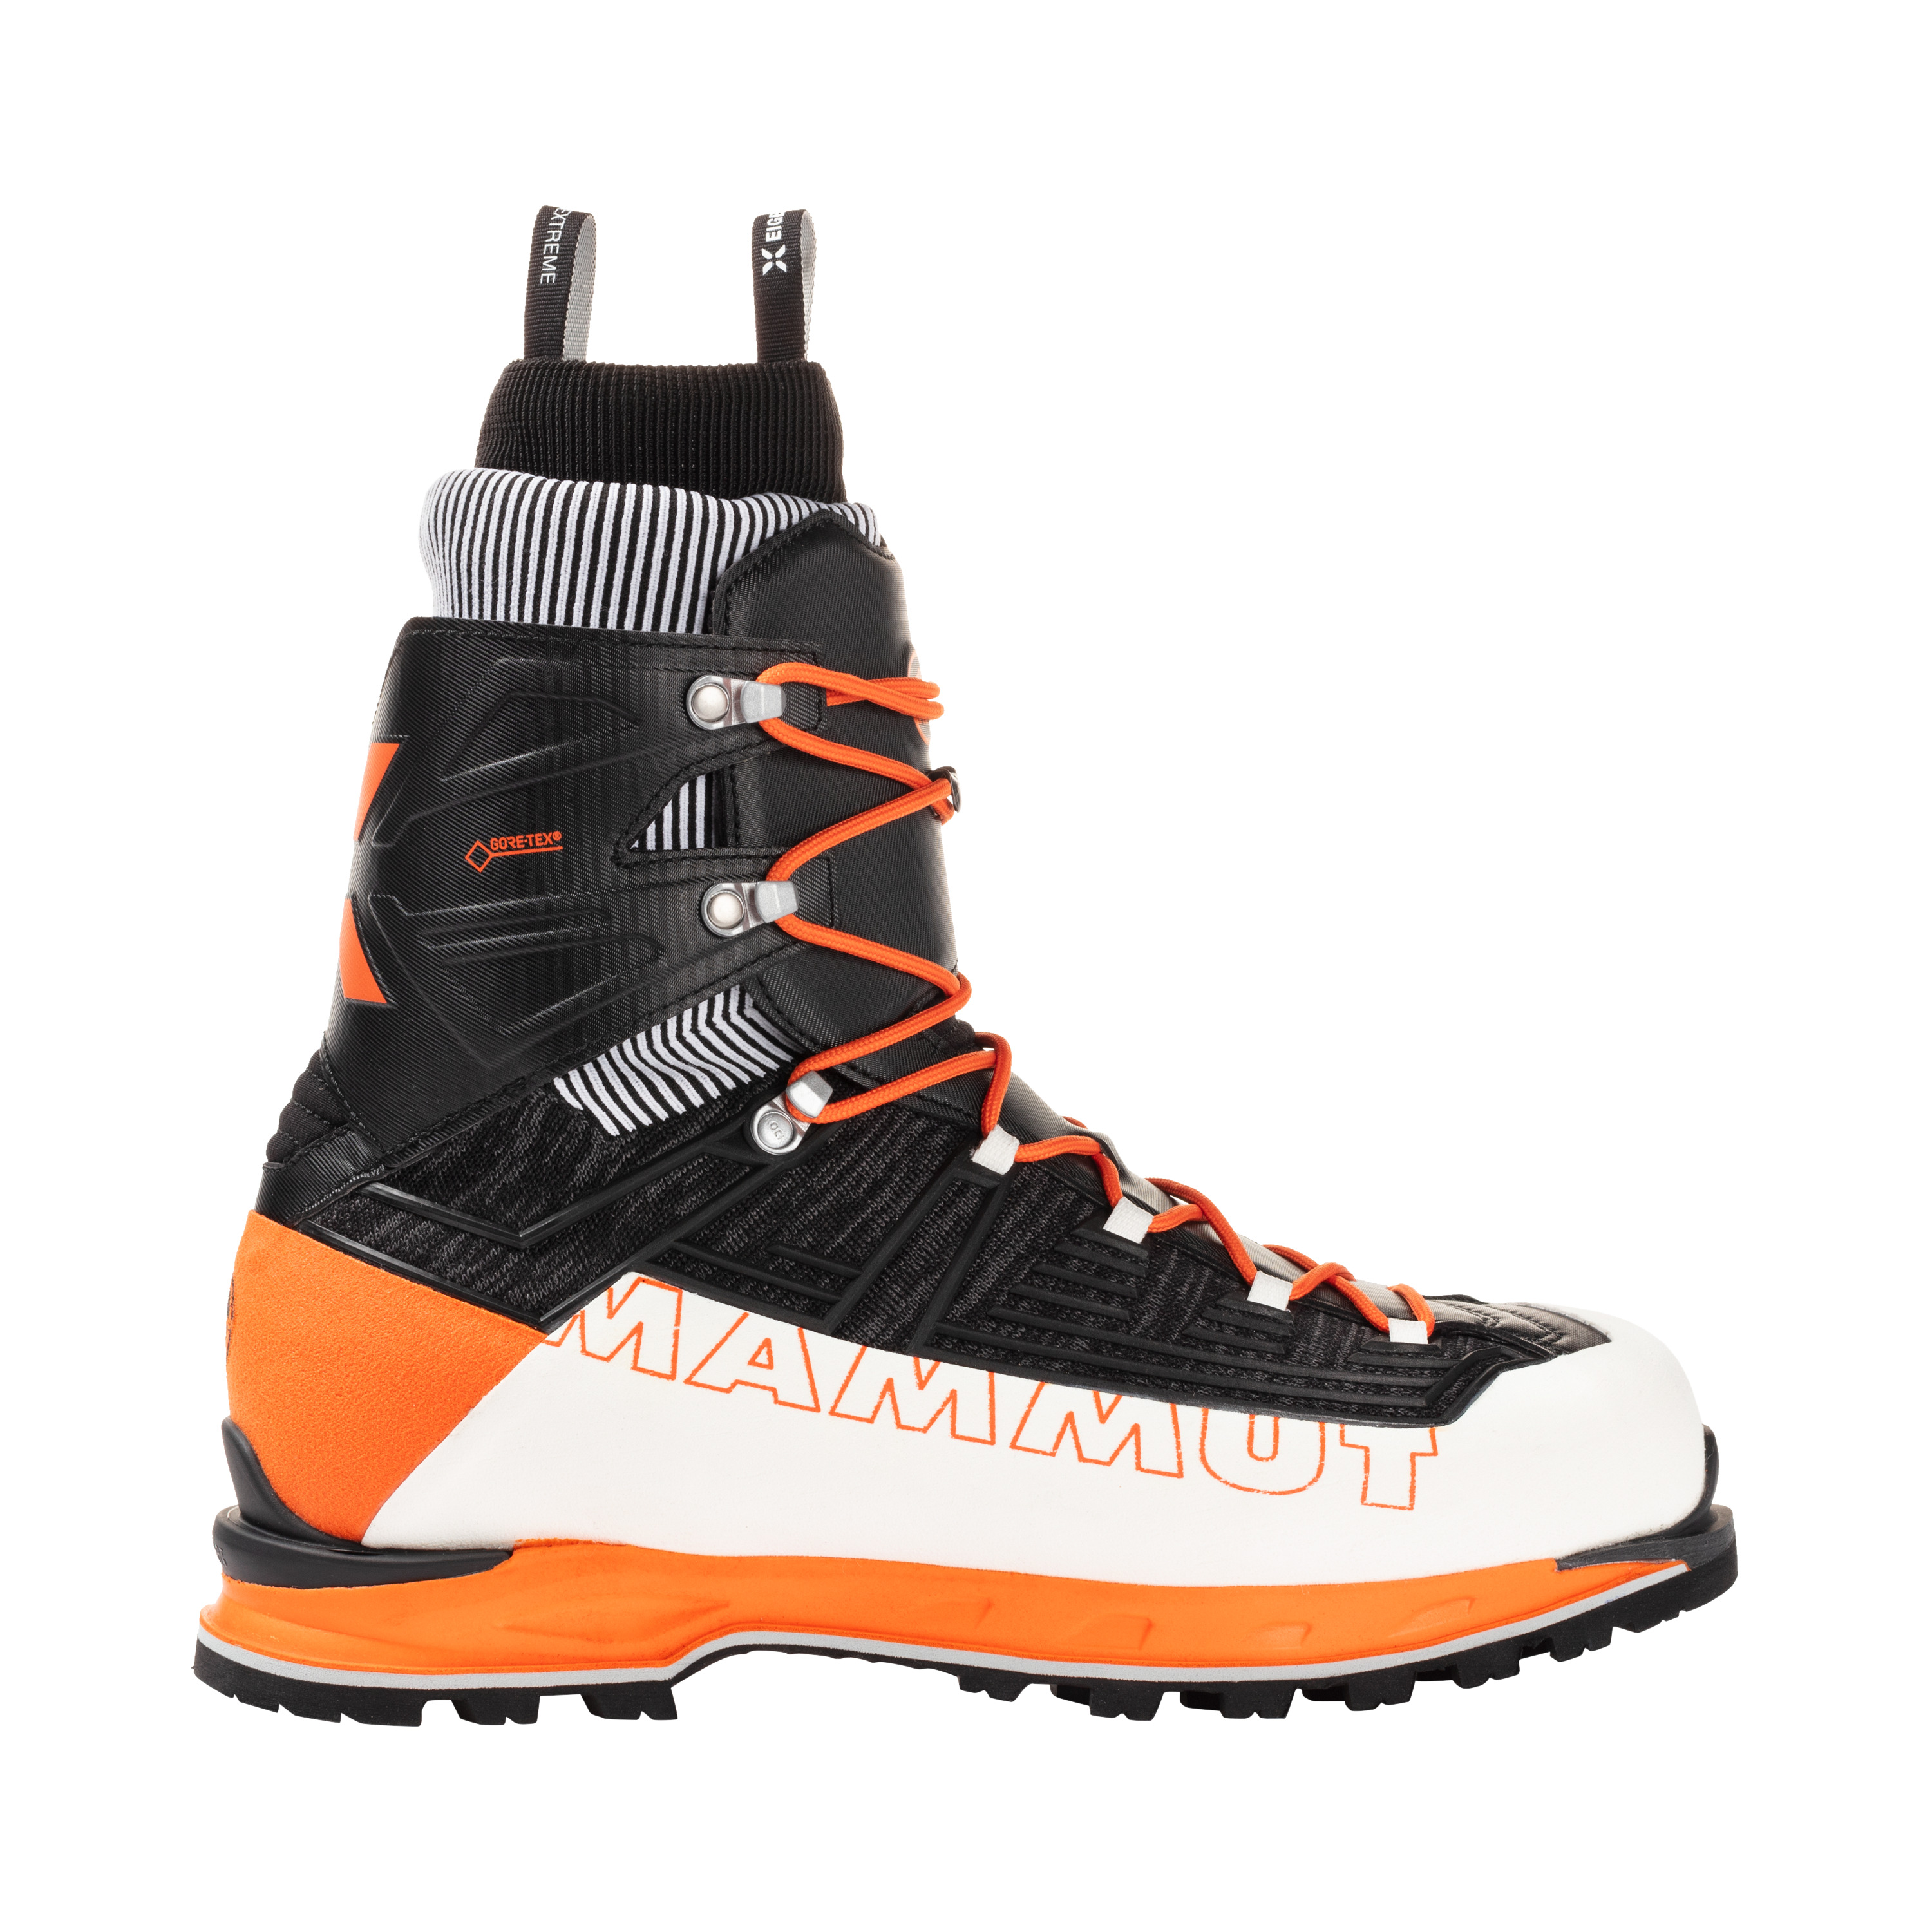 Mammut Nordwand Knit High GTX Mountaineering Shoes - Men's